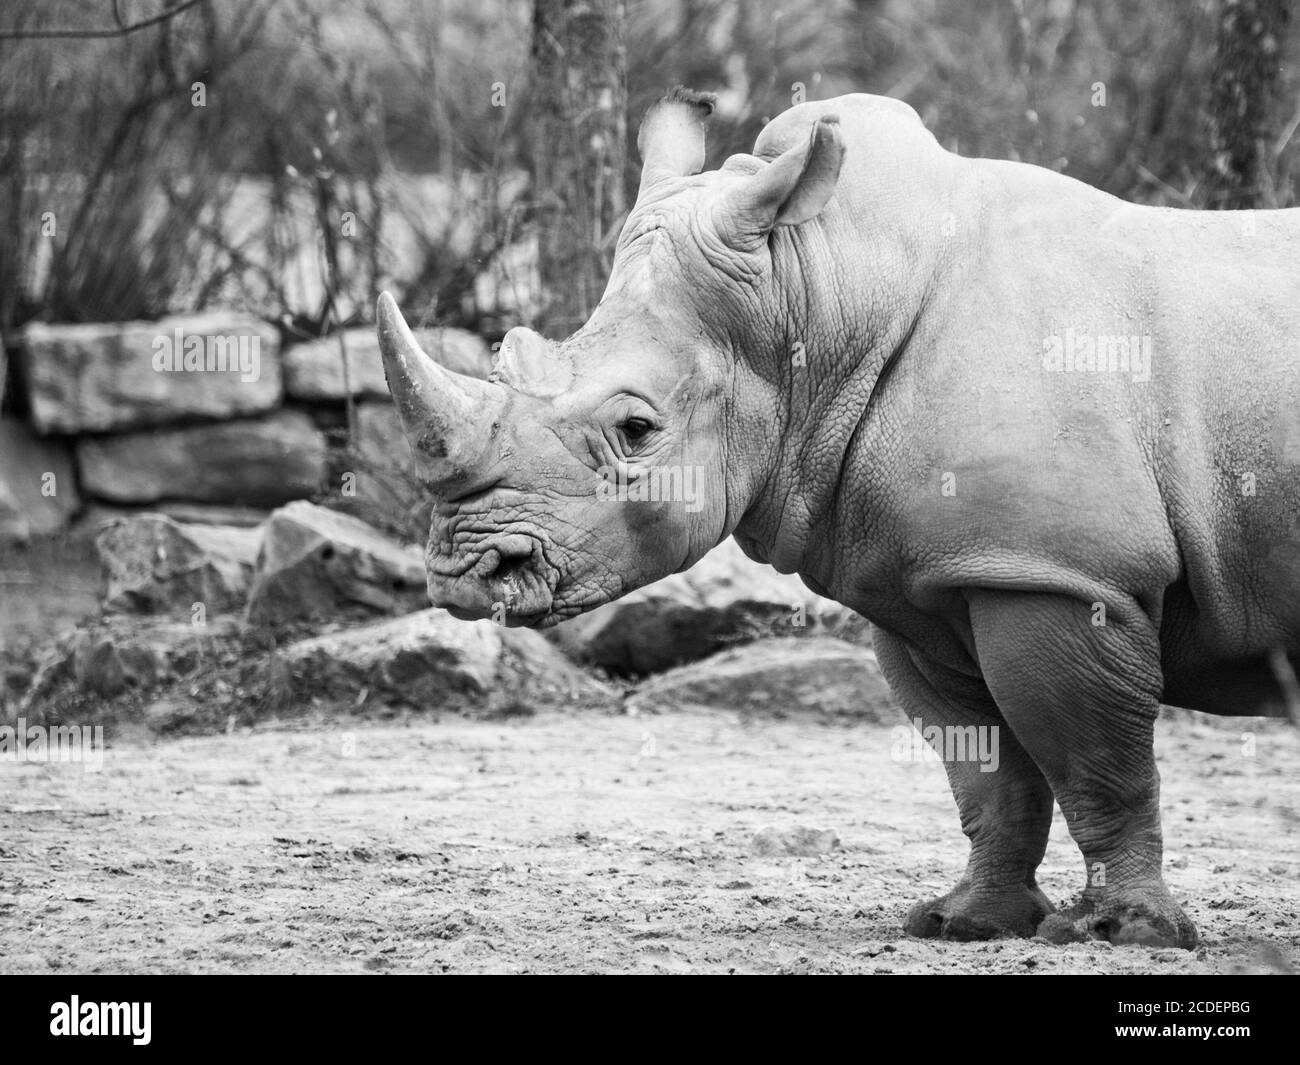 Rhinocero noir, Diceros bicornis, mammifère africain sauvage, dangereux et en danger de disparition au ZOO. Image en noir et blanc. Banque D'Images